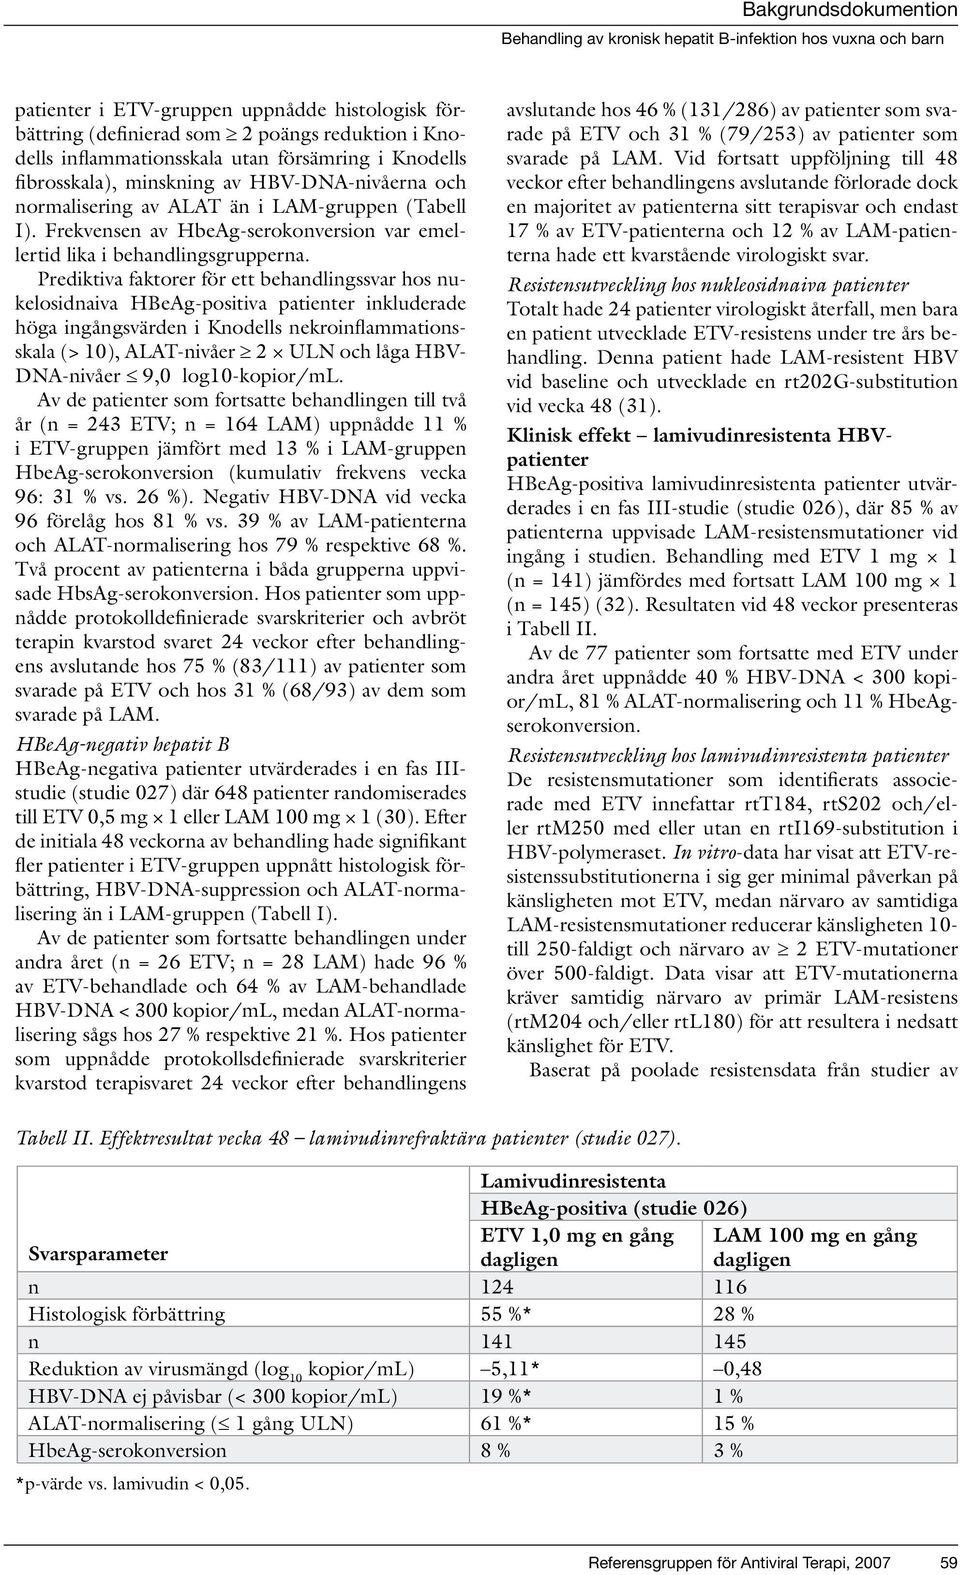 Prediktiva faktorer för ett behandlingssvar hos nukelosidnaiva HBeAg-positiva patienter inkluderade höga ingångsvärden i Knodells nekroinflammationsskala (> 10), ALAT-nivåer 2 ULN och låga HBV-